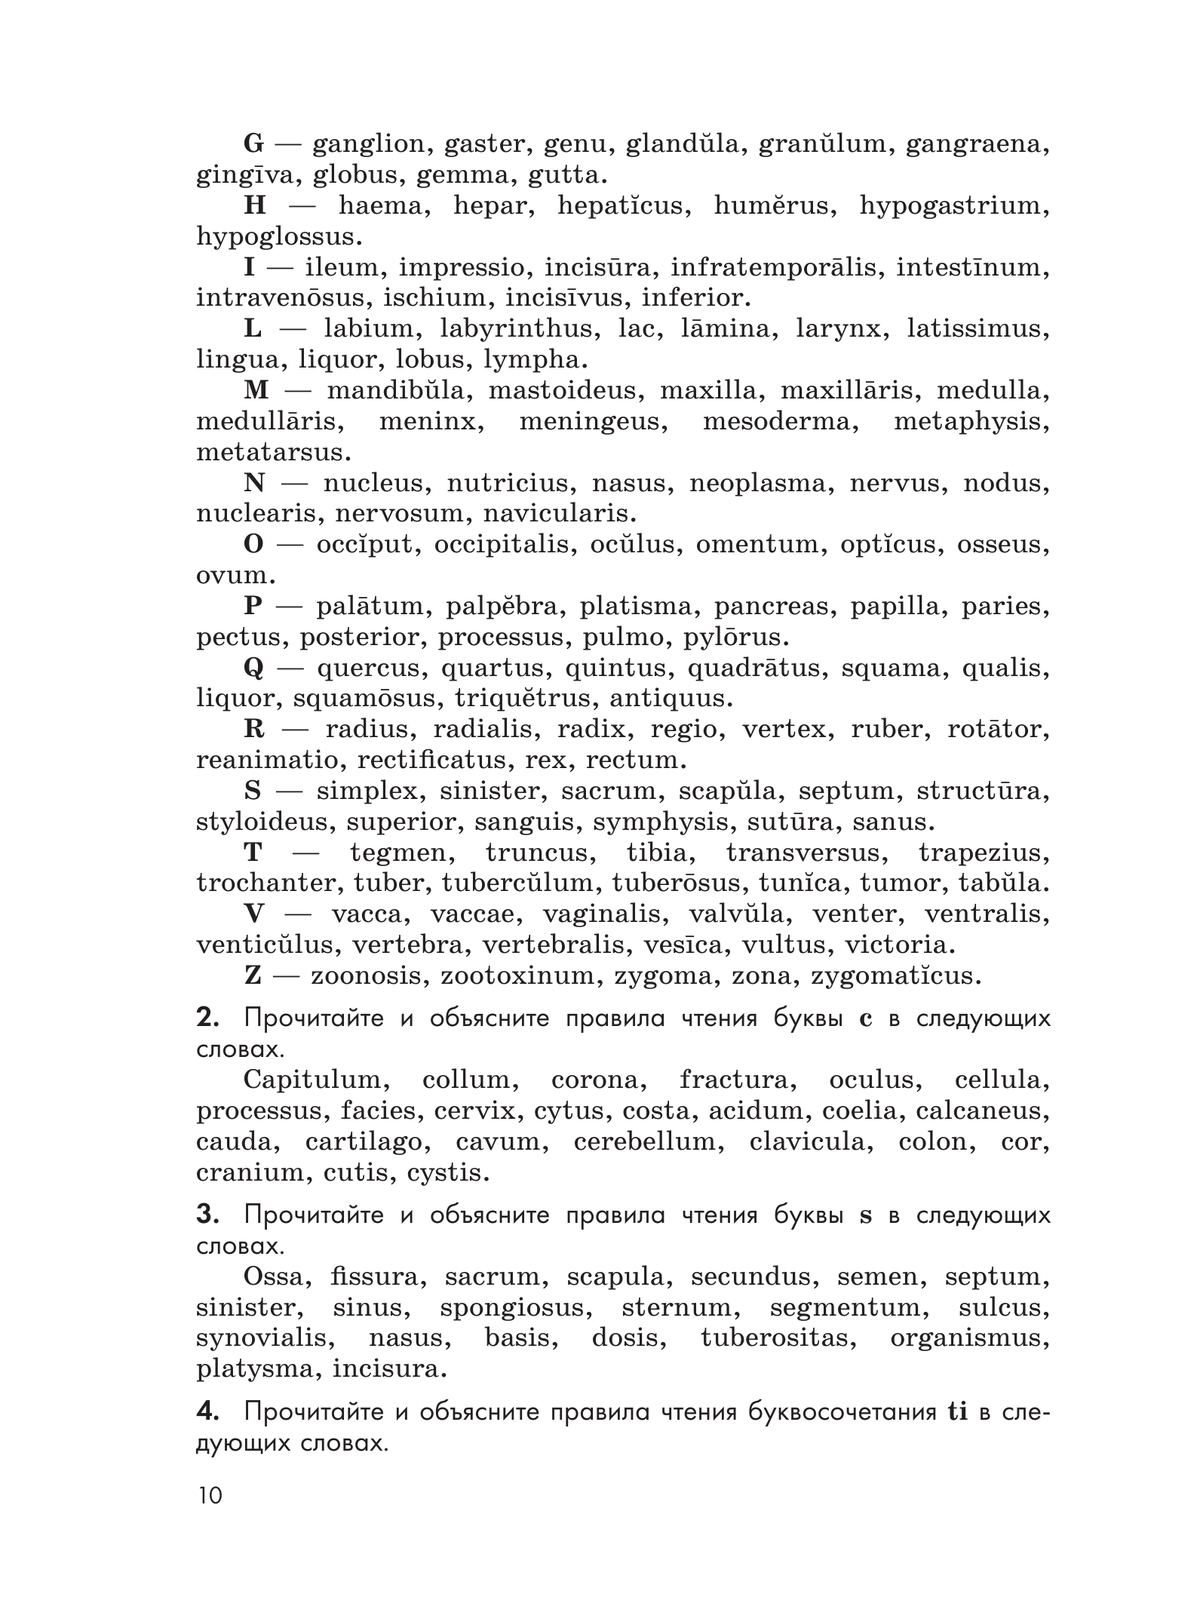 Латинский язык для медицинских классов. 10-11 классы 5